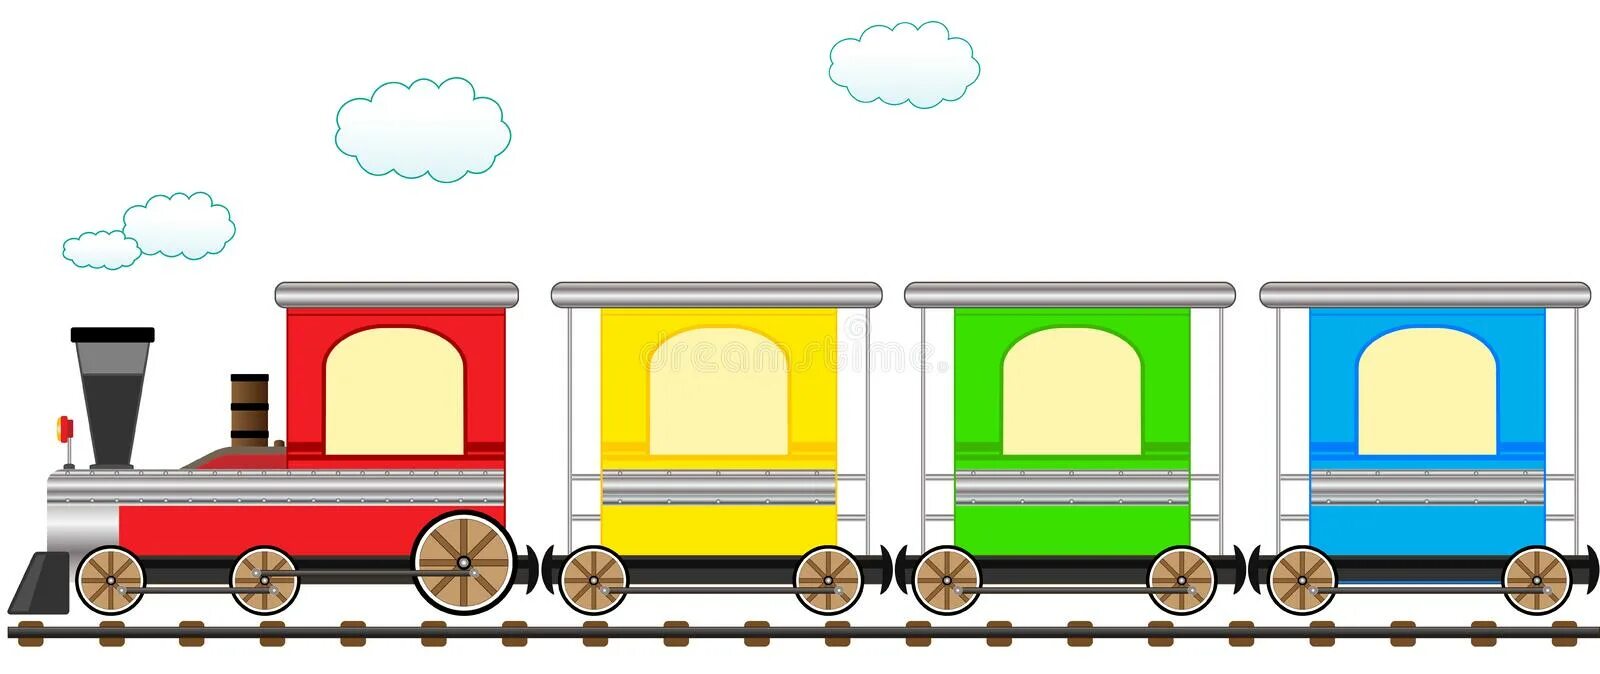 Три математика ехали в разных вагонах. Поезд с вагонами для детей. Паровоз для дошкольников. Паровоз с вагонами. Паровозик с вагонами для детей.